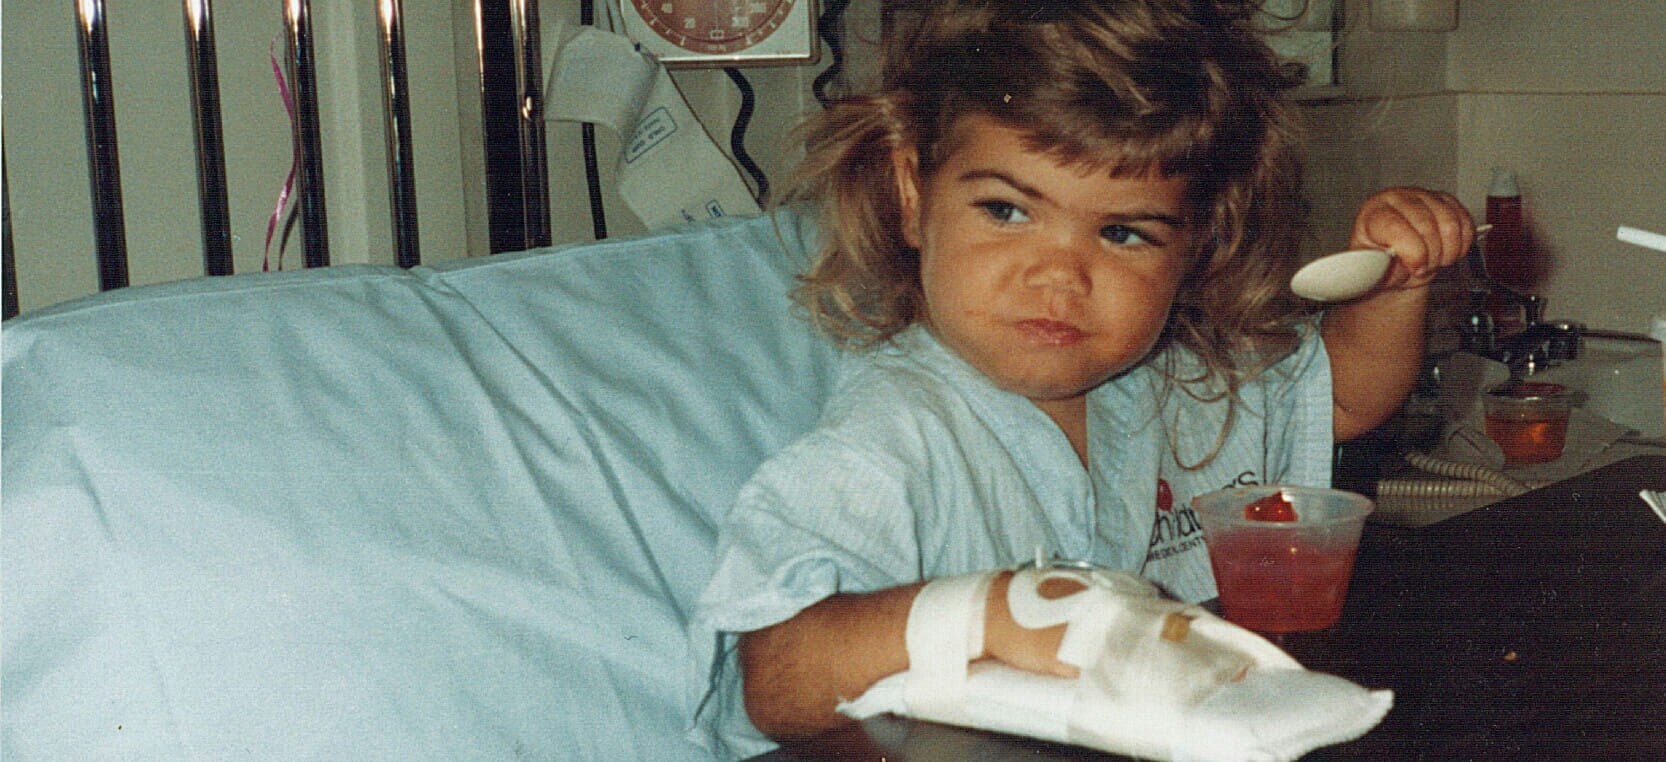 21个月大的肯德拉·普拉利在接受心脏移植手术后不久躺在病床上。